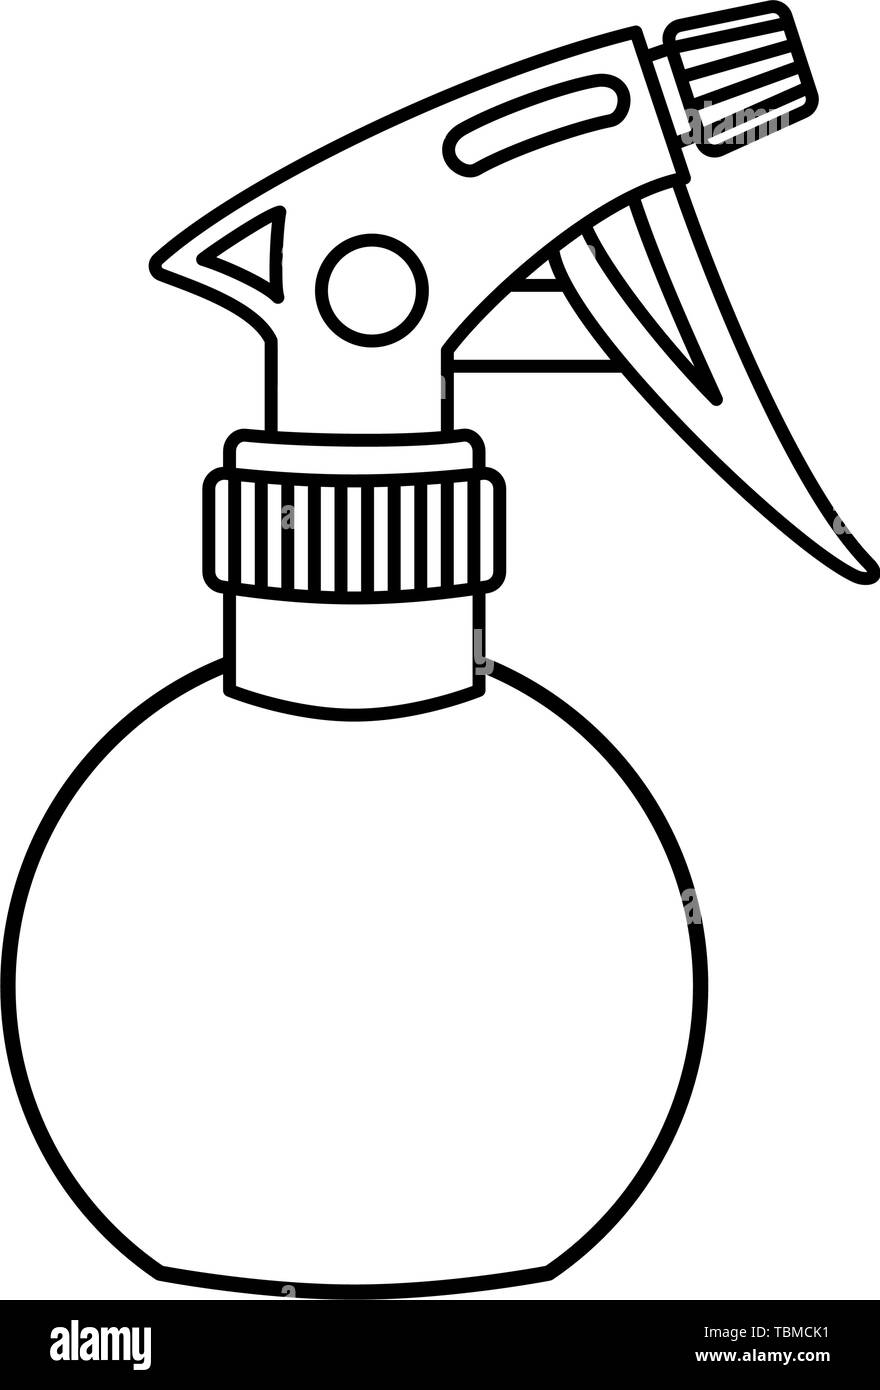 Pulverizador De Agua De Peluquería Botella De Plástico De Color Dorado.  Aislado En Blanco. Ilustración De Vector. Ilustraciones svg, vectoriales,  clip art vectorizado libre de derechos. Image 125276131